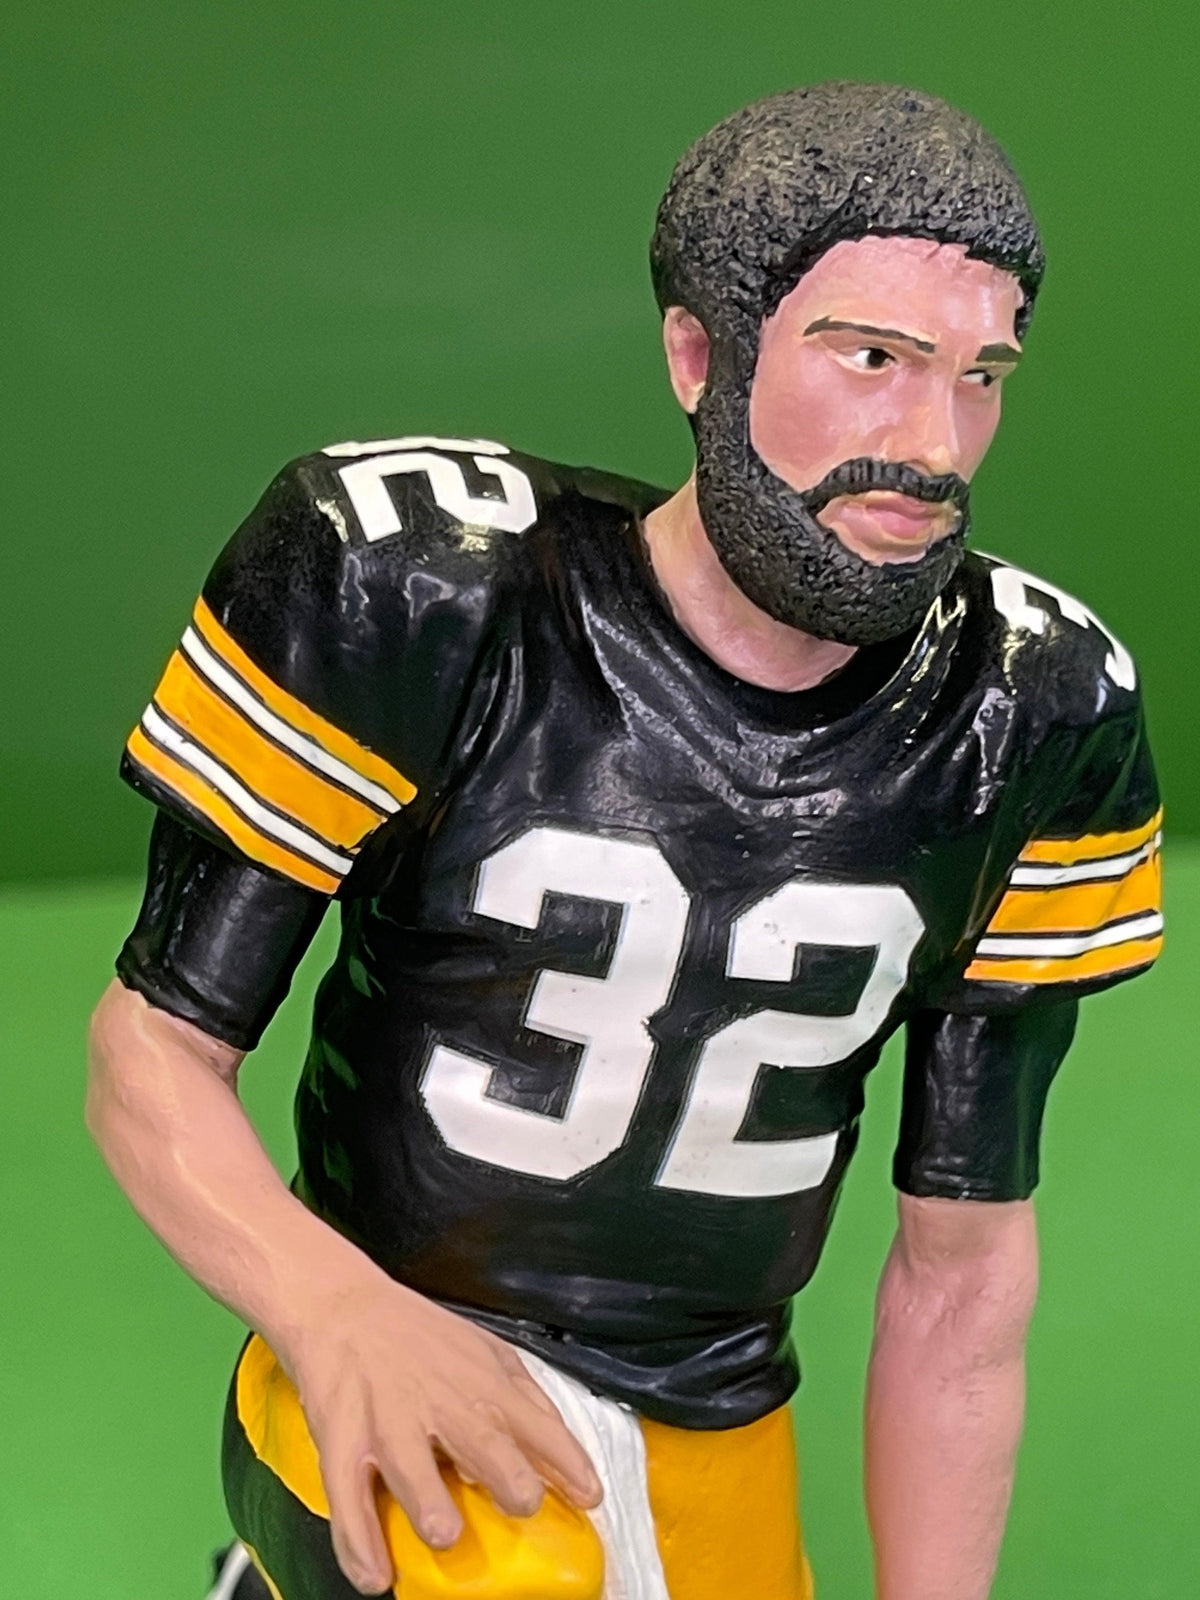 NFL Pittsburgh Steelers Franco Harris #32 McFarlane TMP Loose Figure 2015